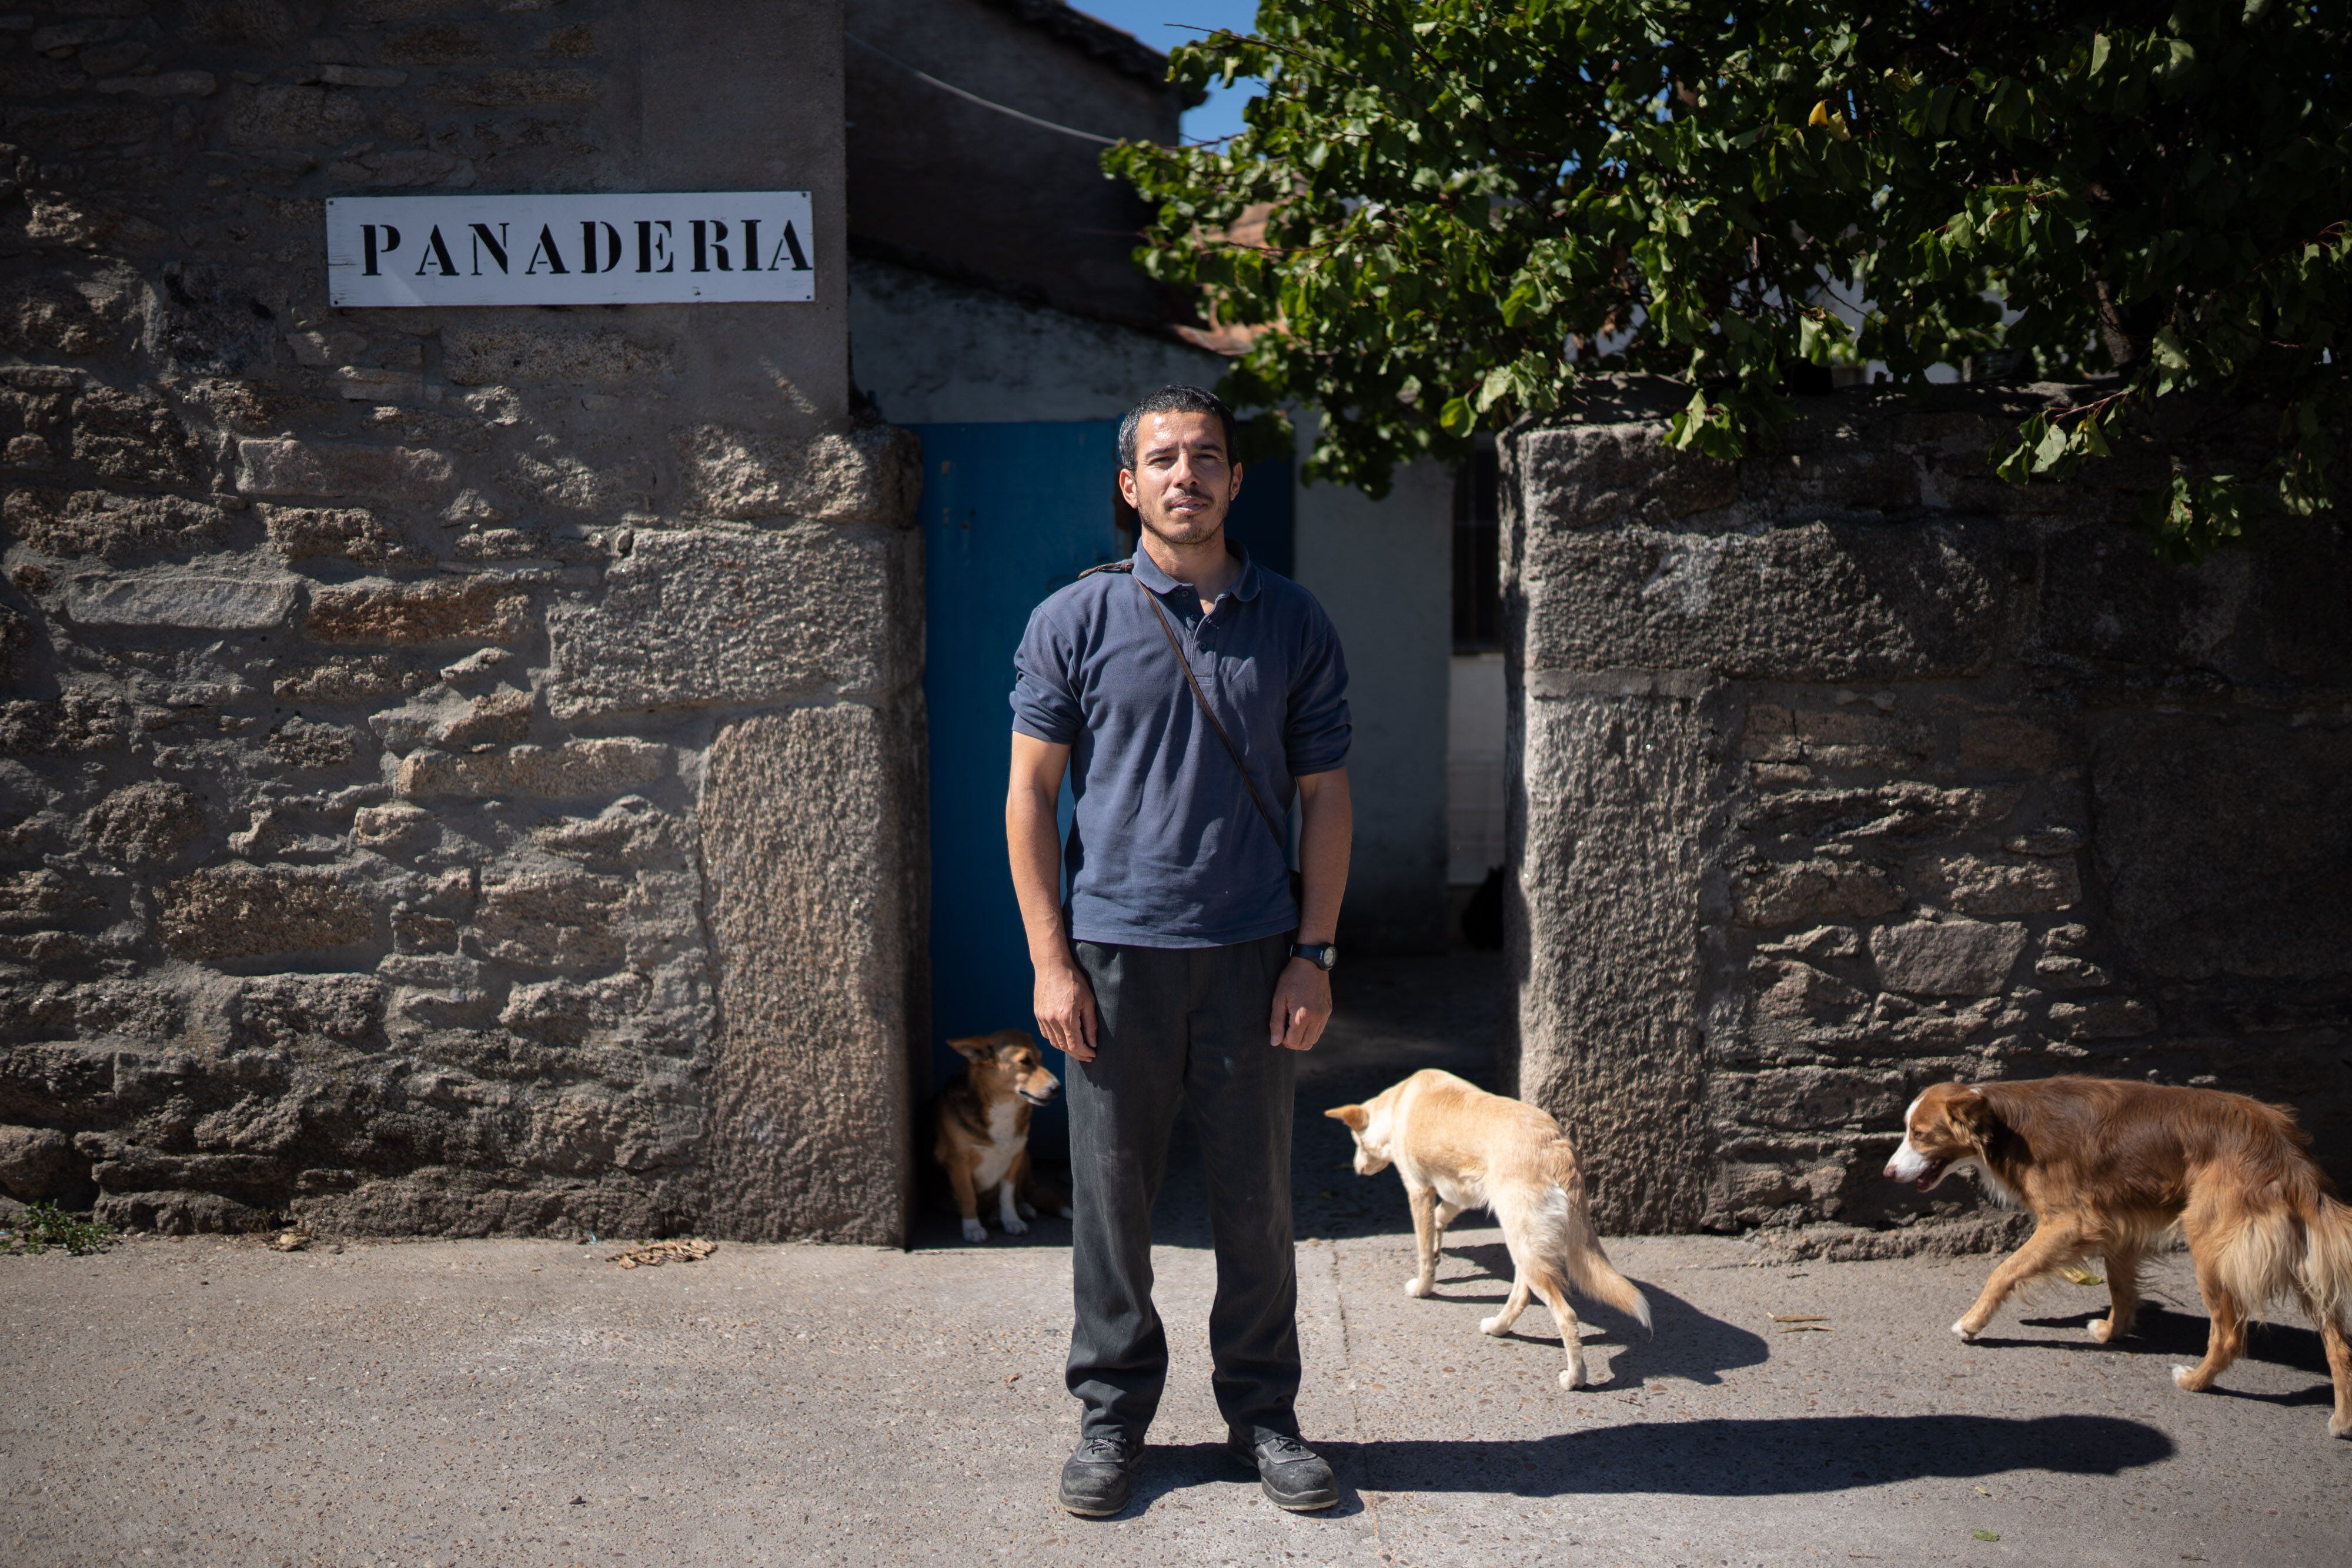 Abdel Halim, migrante argelino que vive y trabaja como panadero en Roelos de Sayago.